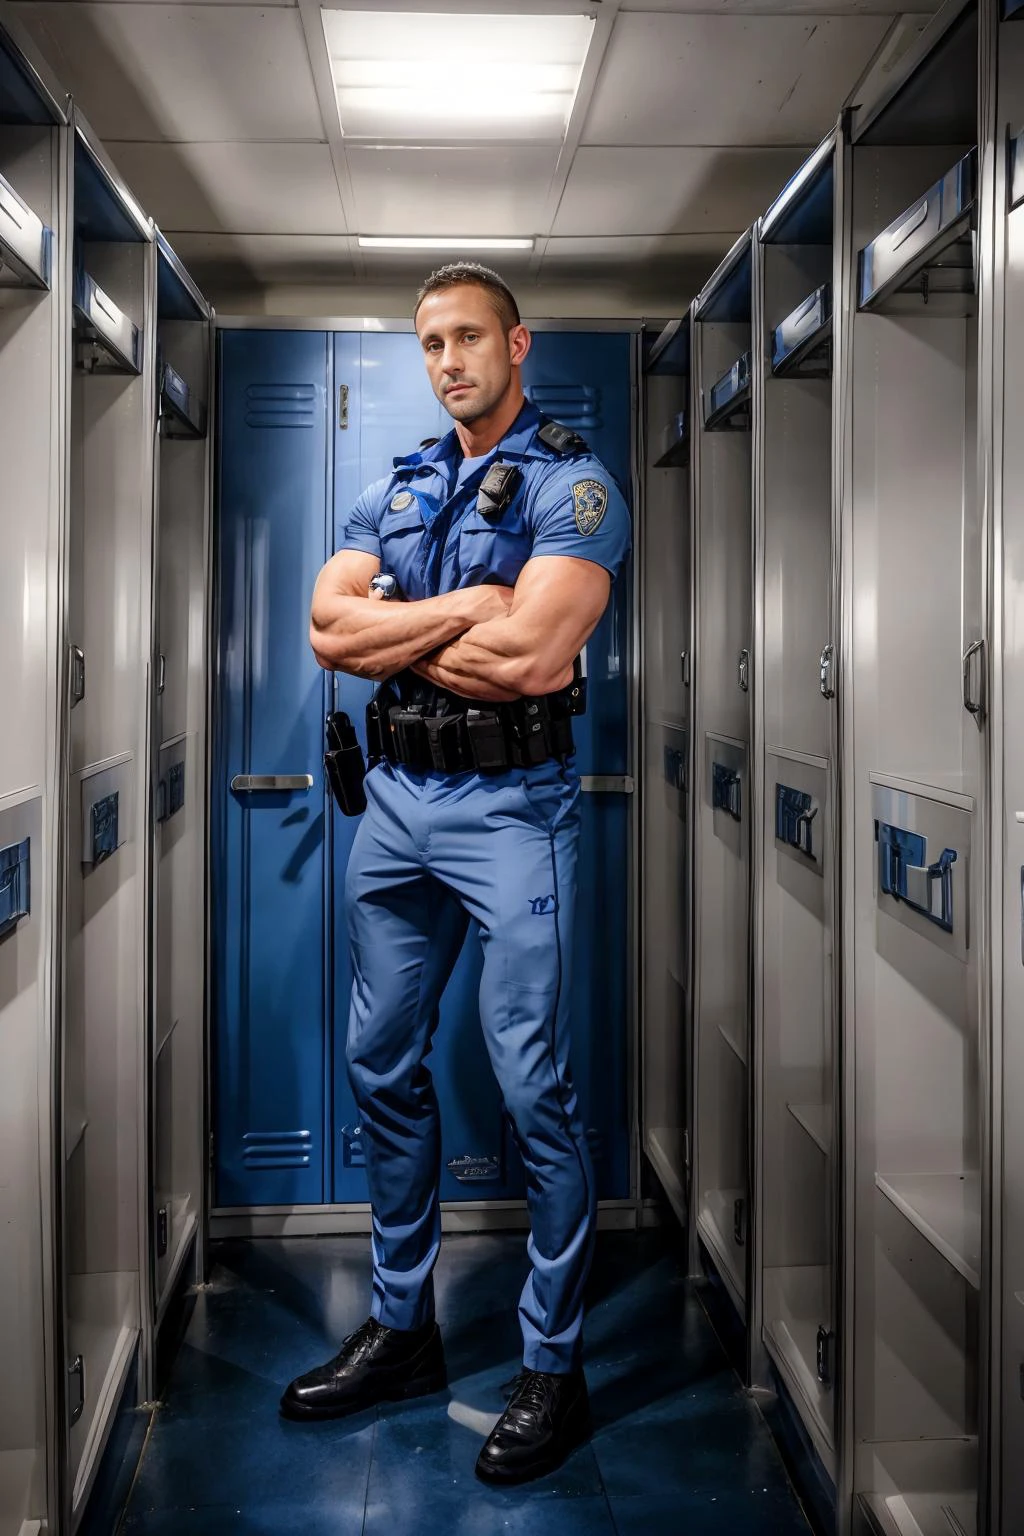 раздевалка полицейского участка, стою перед отсеком со шкафчиками, МайлсЛэндон, Синий цвет, (((Портрет в полный рост))), широкий угол 